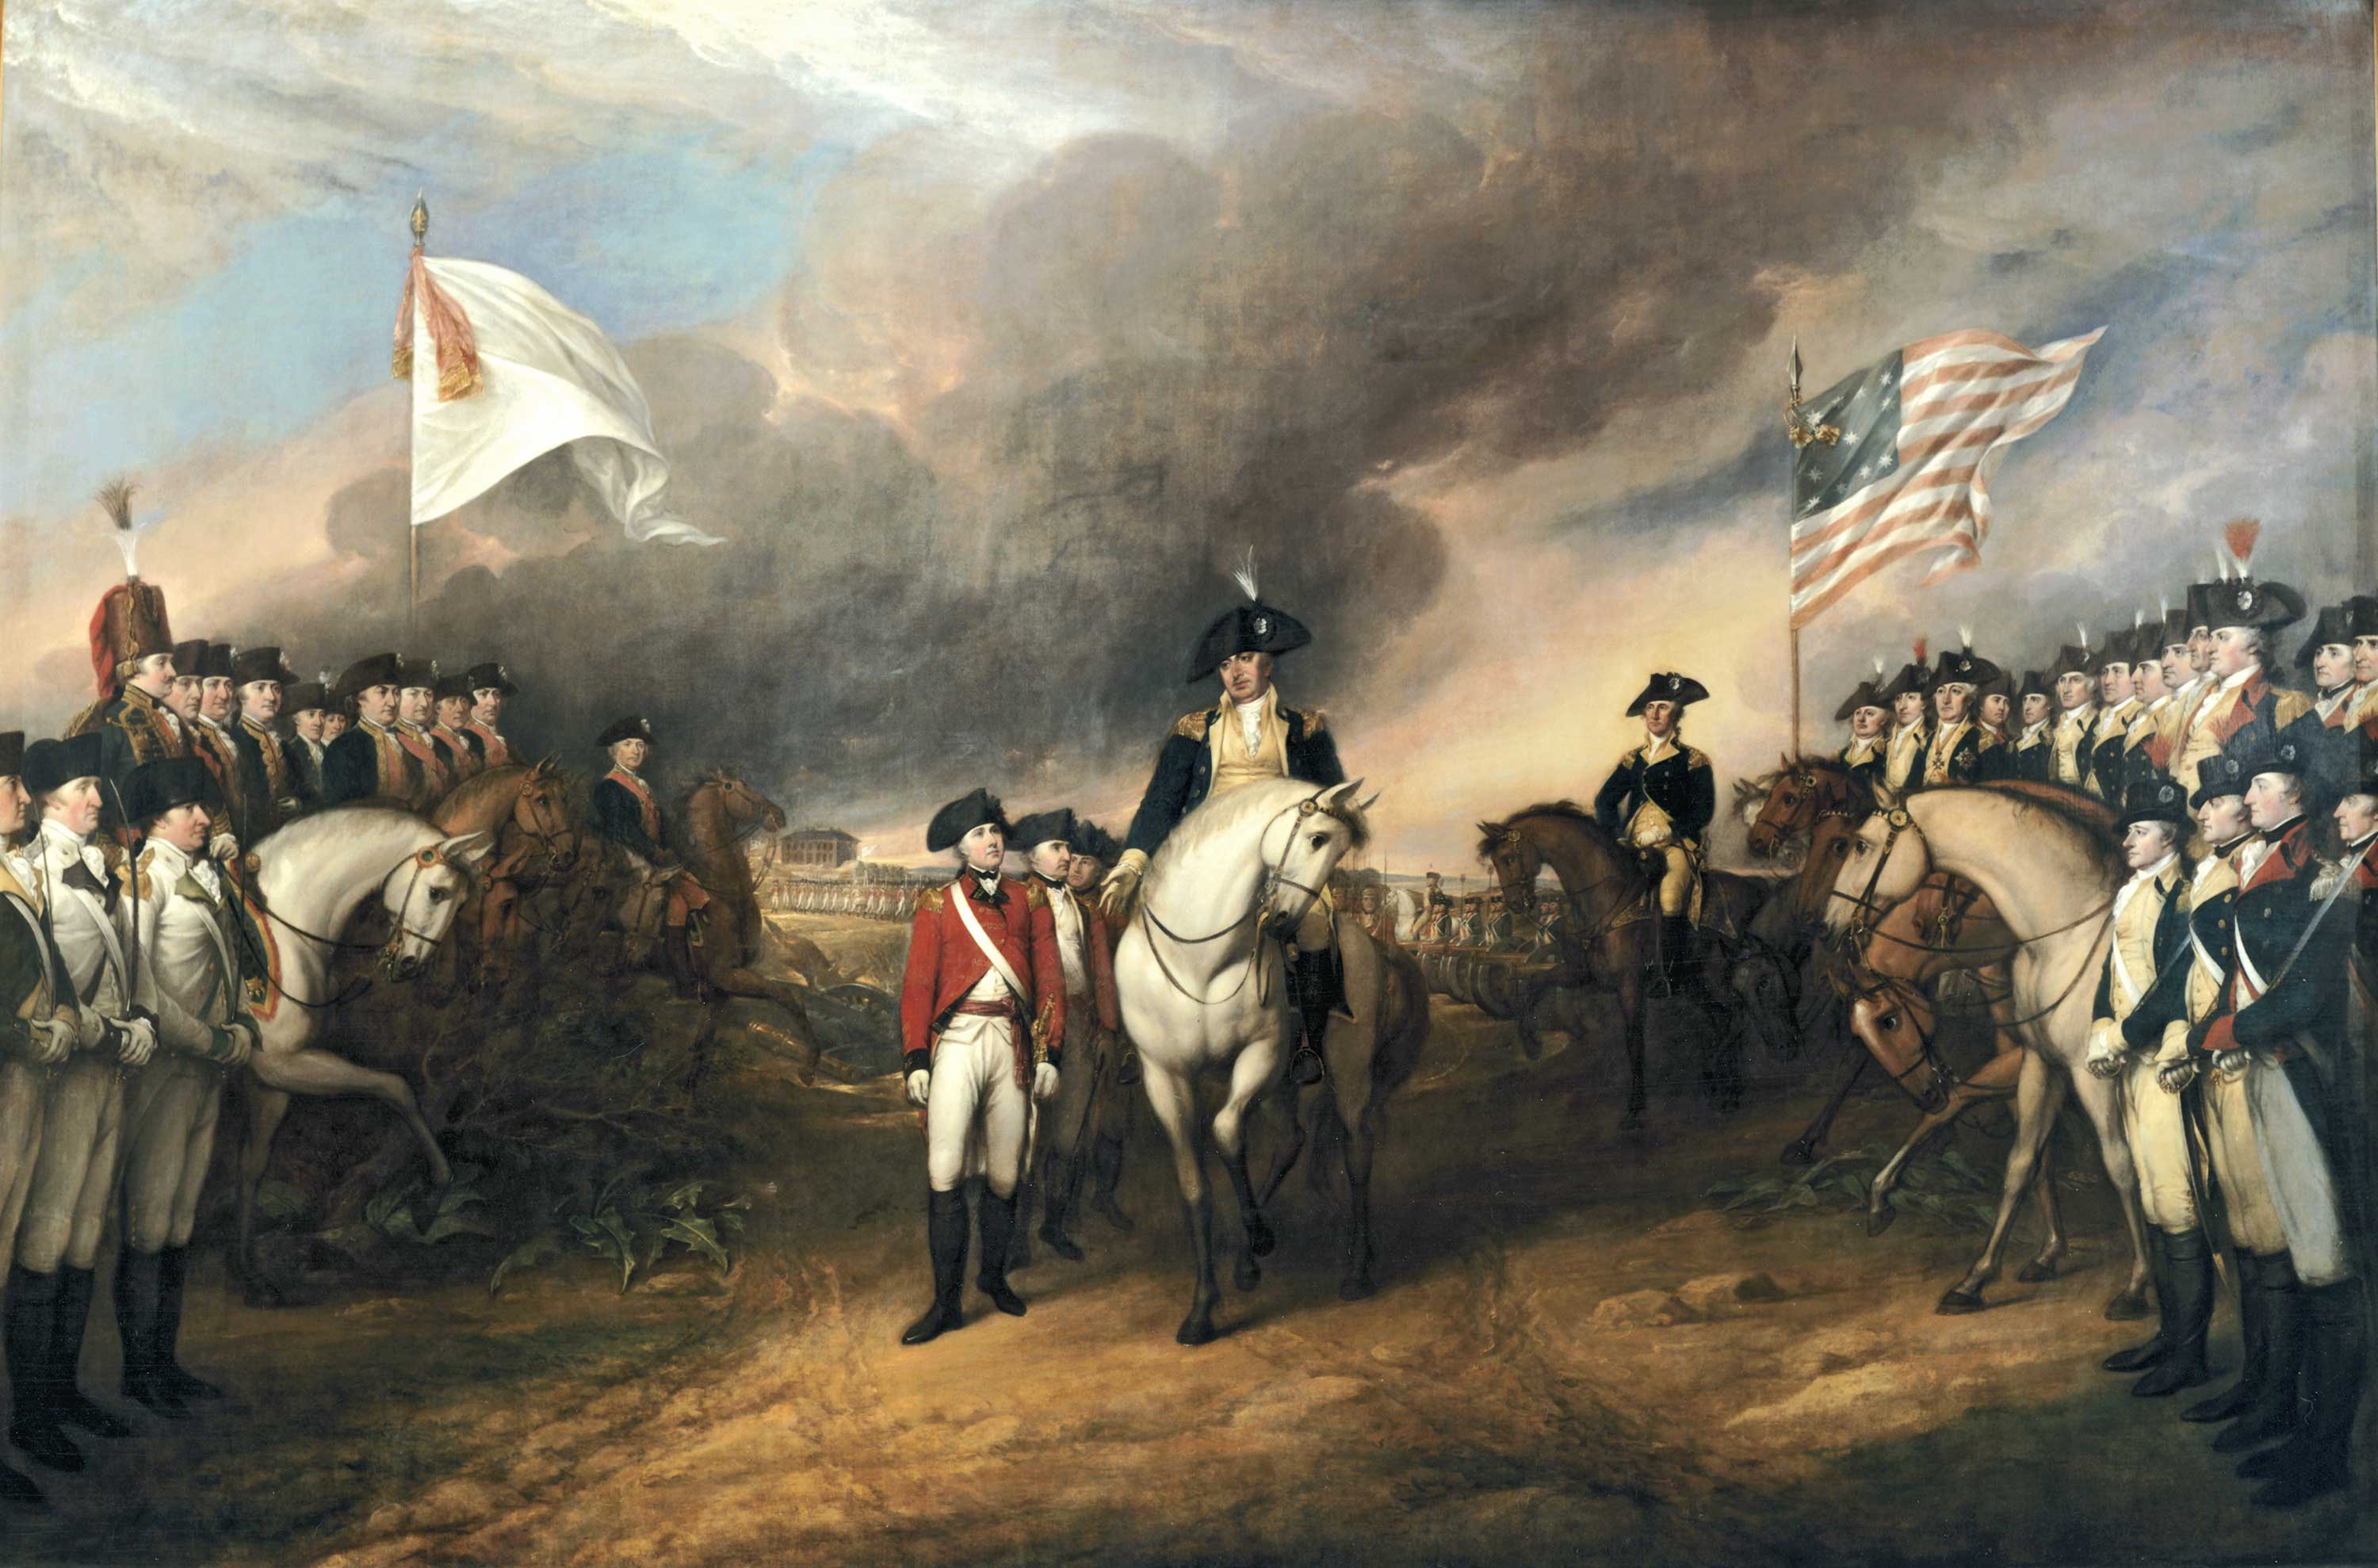 La reddition de Cornwallis à Yorktown. Les Français sont à gauche, les Américains à droite.